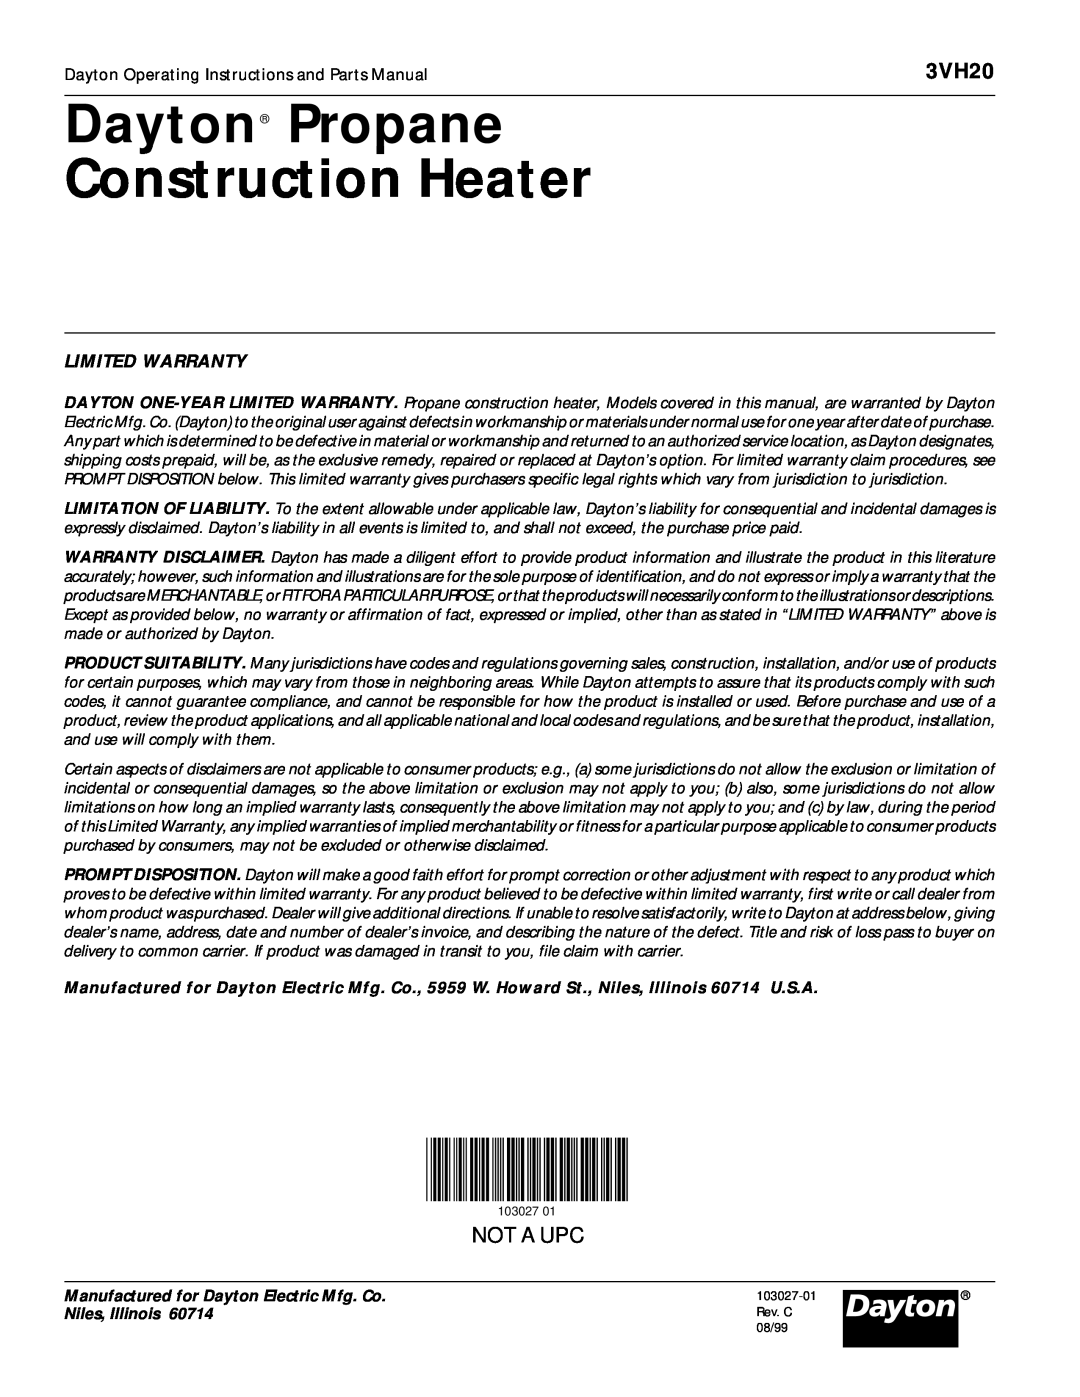 Dayton 3VH20 operating instructions Dayton Propane Construction Heater, Not A Upc, Limited Warranty 